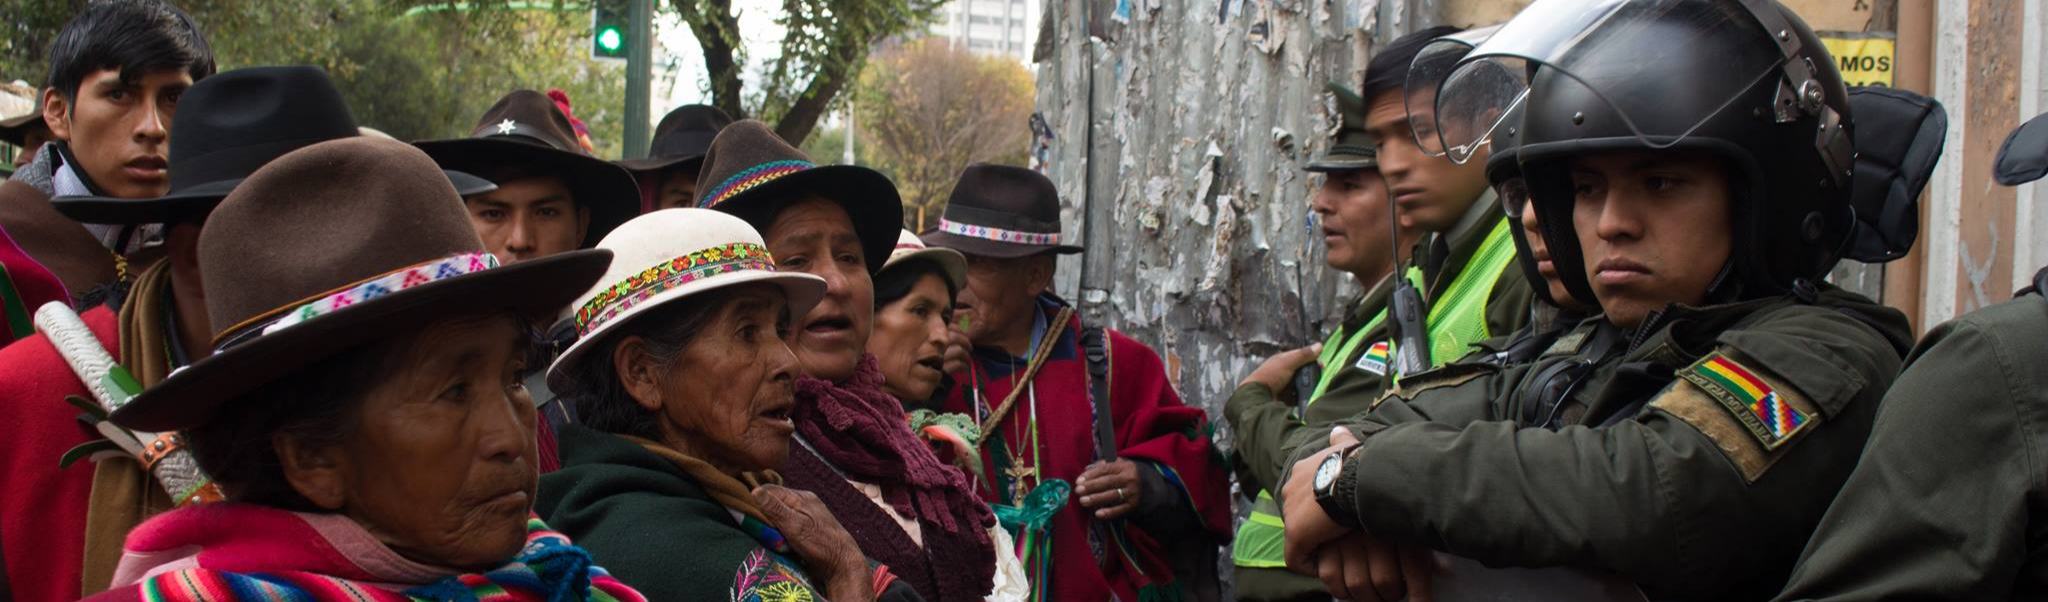 Cinco lições do golpe na Bolívia que as forças sociais e políticas populares deveriam aprender